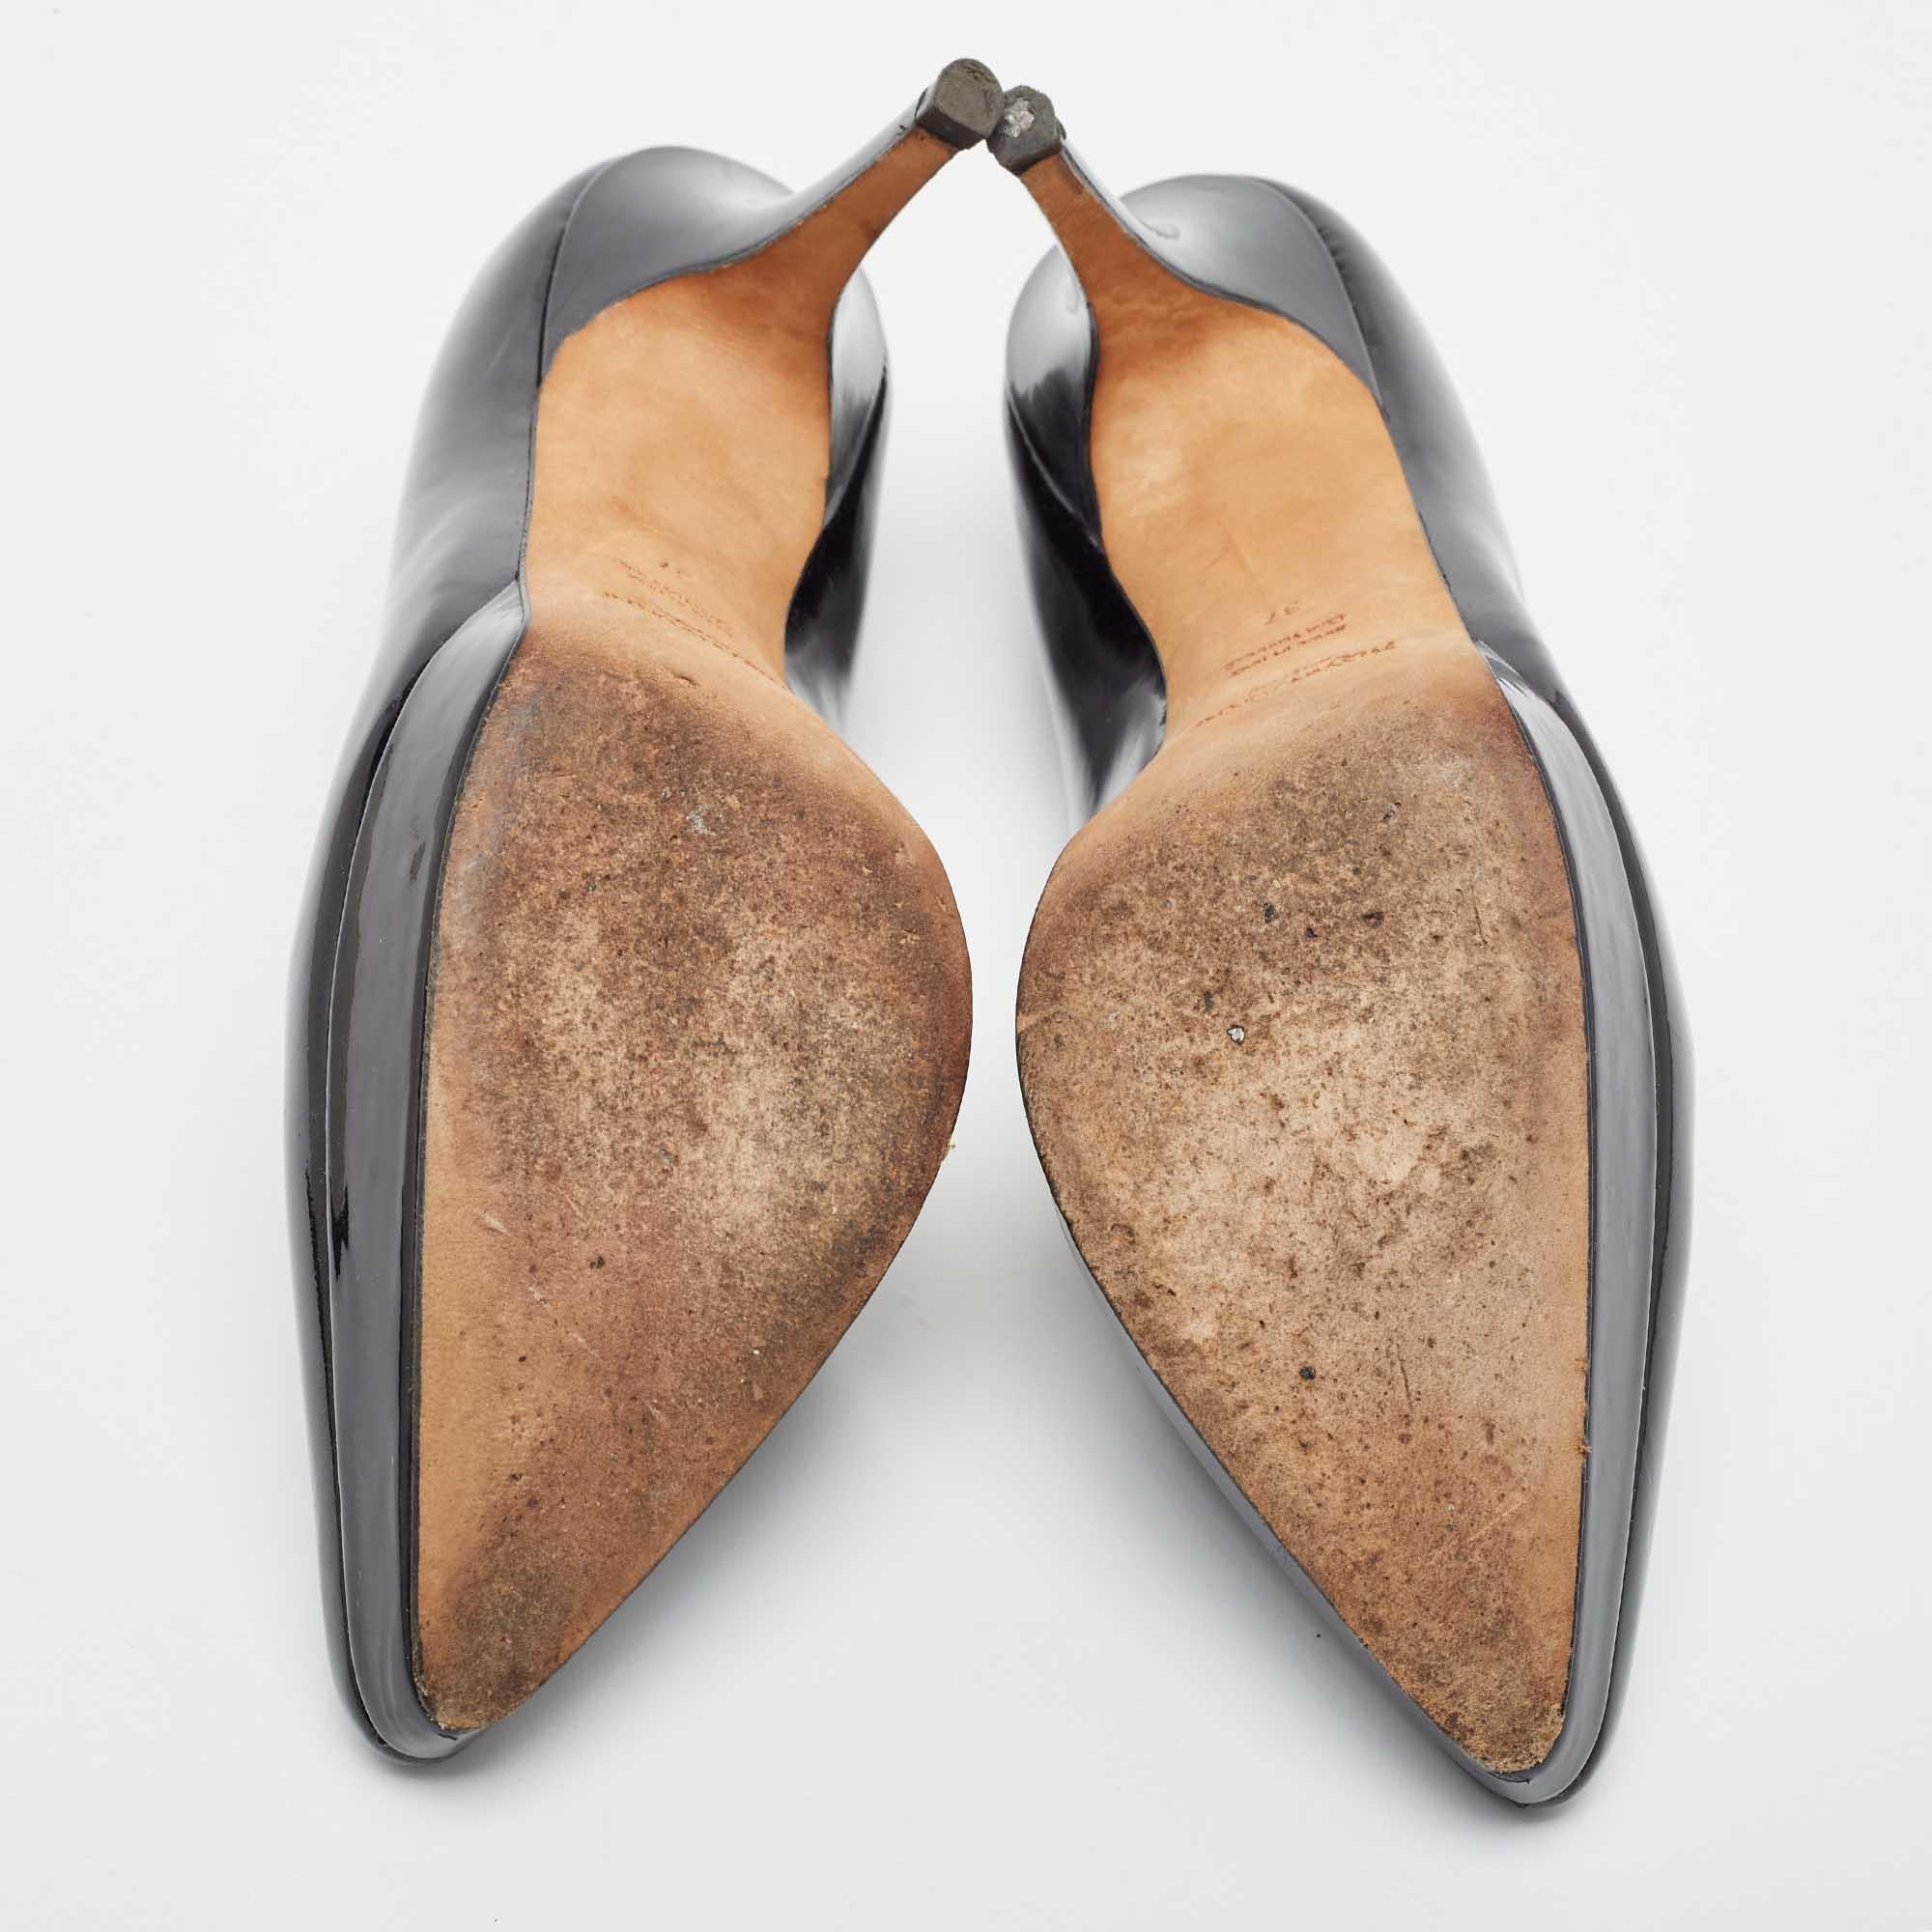 Yves Saint Laurent Black Patent Leather Platform Pointed Toe Pumps Size 37 3